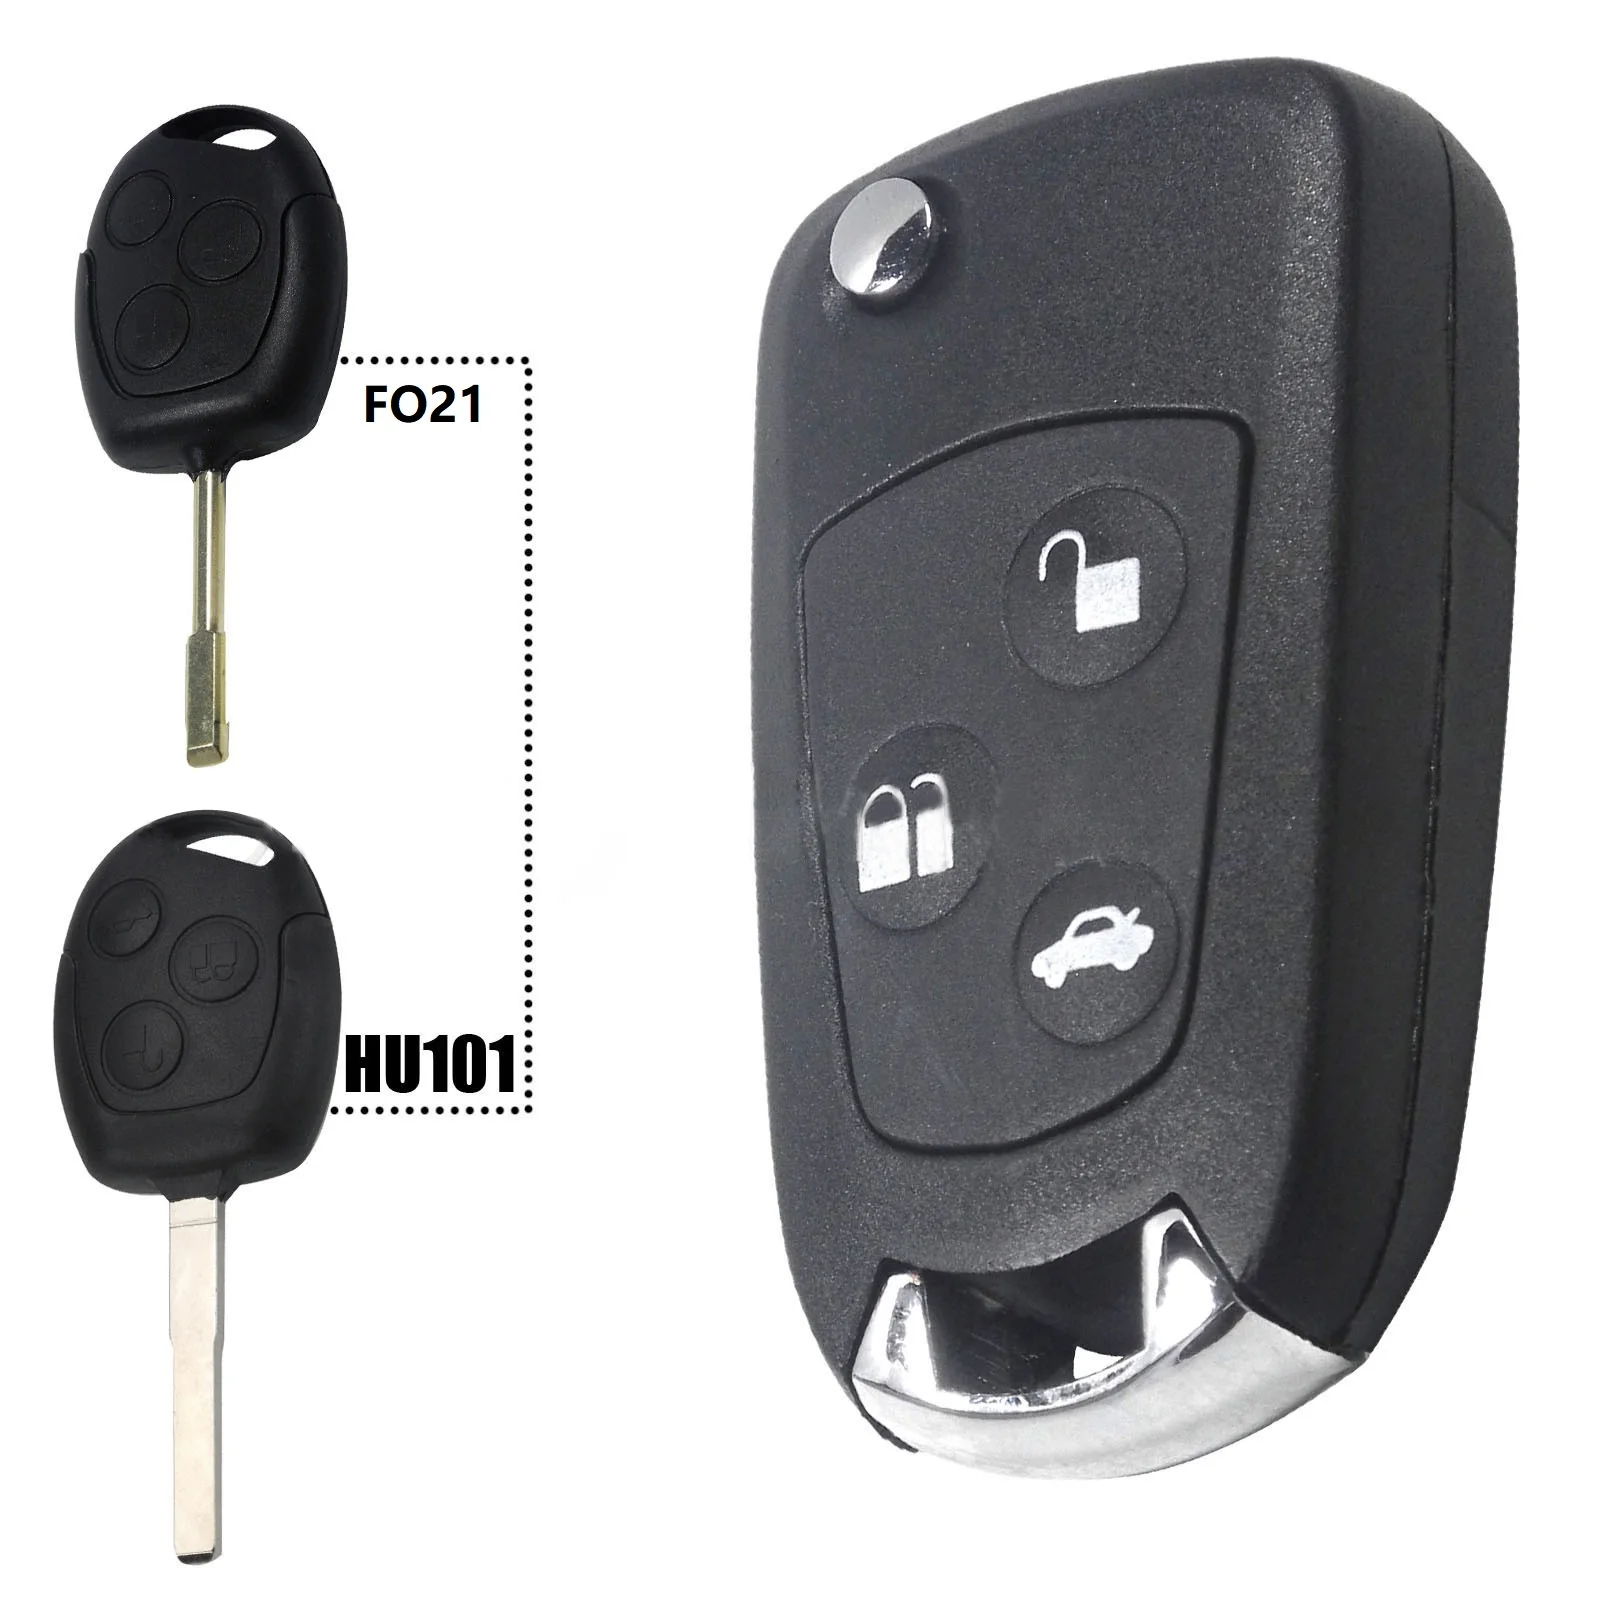 

3-кнопочный Модифицированный Корпус ключа дистанционного управления, складной дистанционный Фотофон, для Ford Focus Mondeo 2 3 Fiesta FO21/HU101 Blade